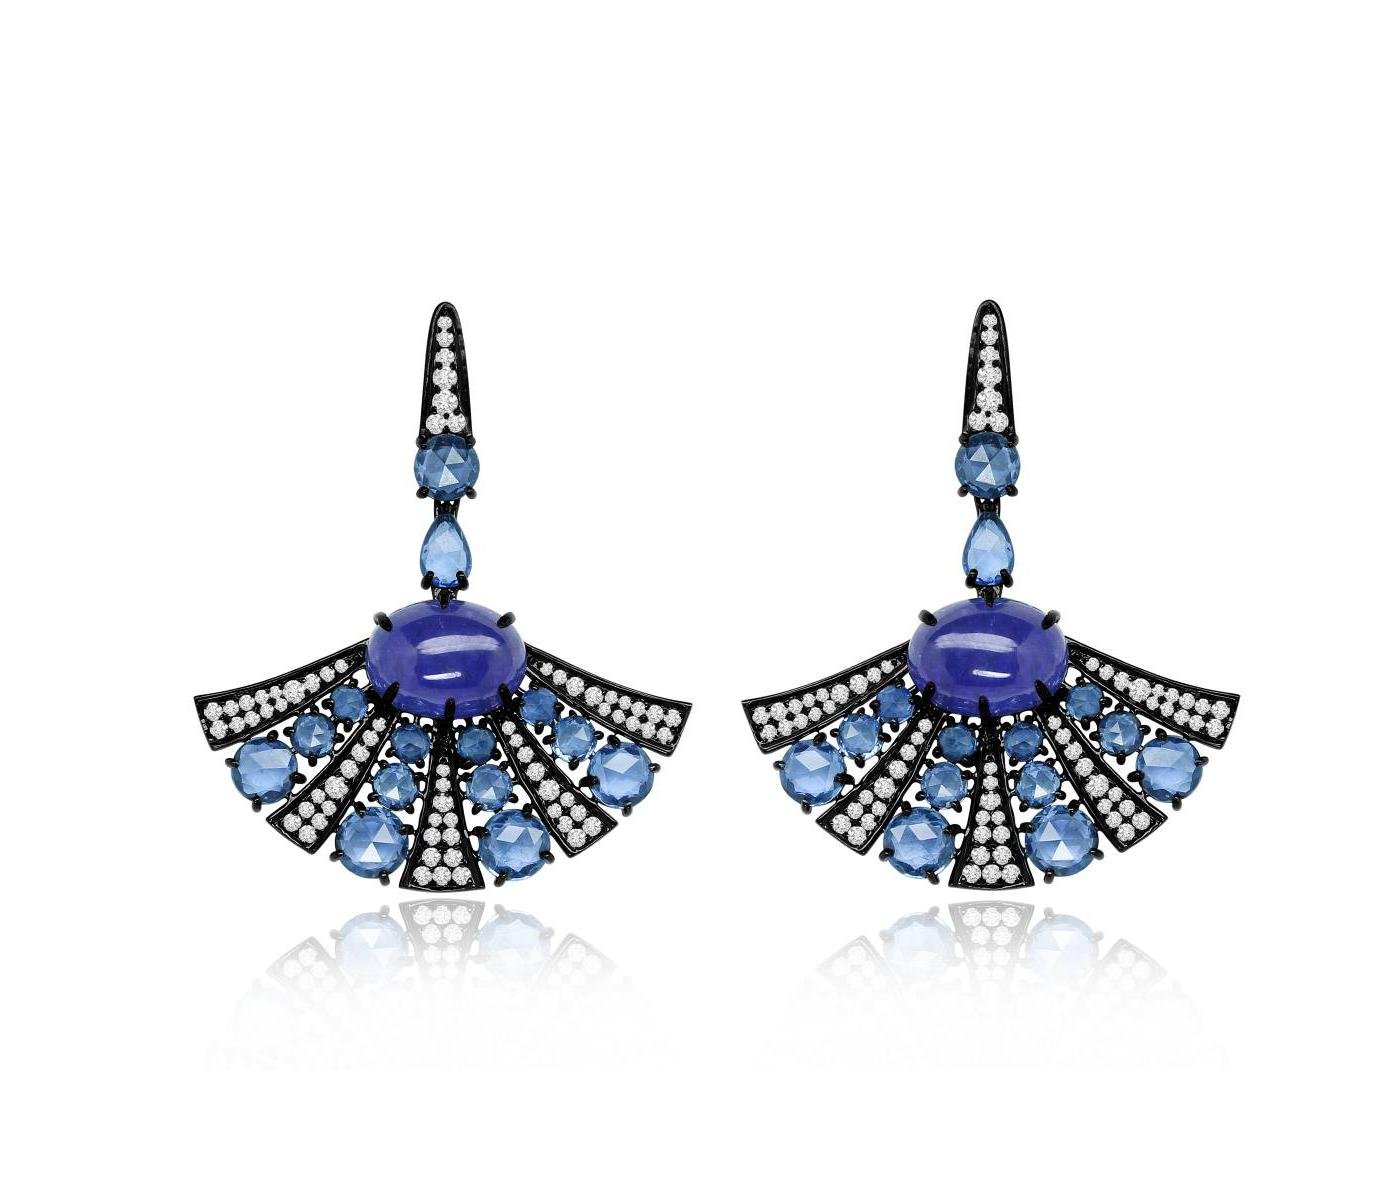 Earrings by Sutra